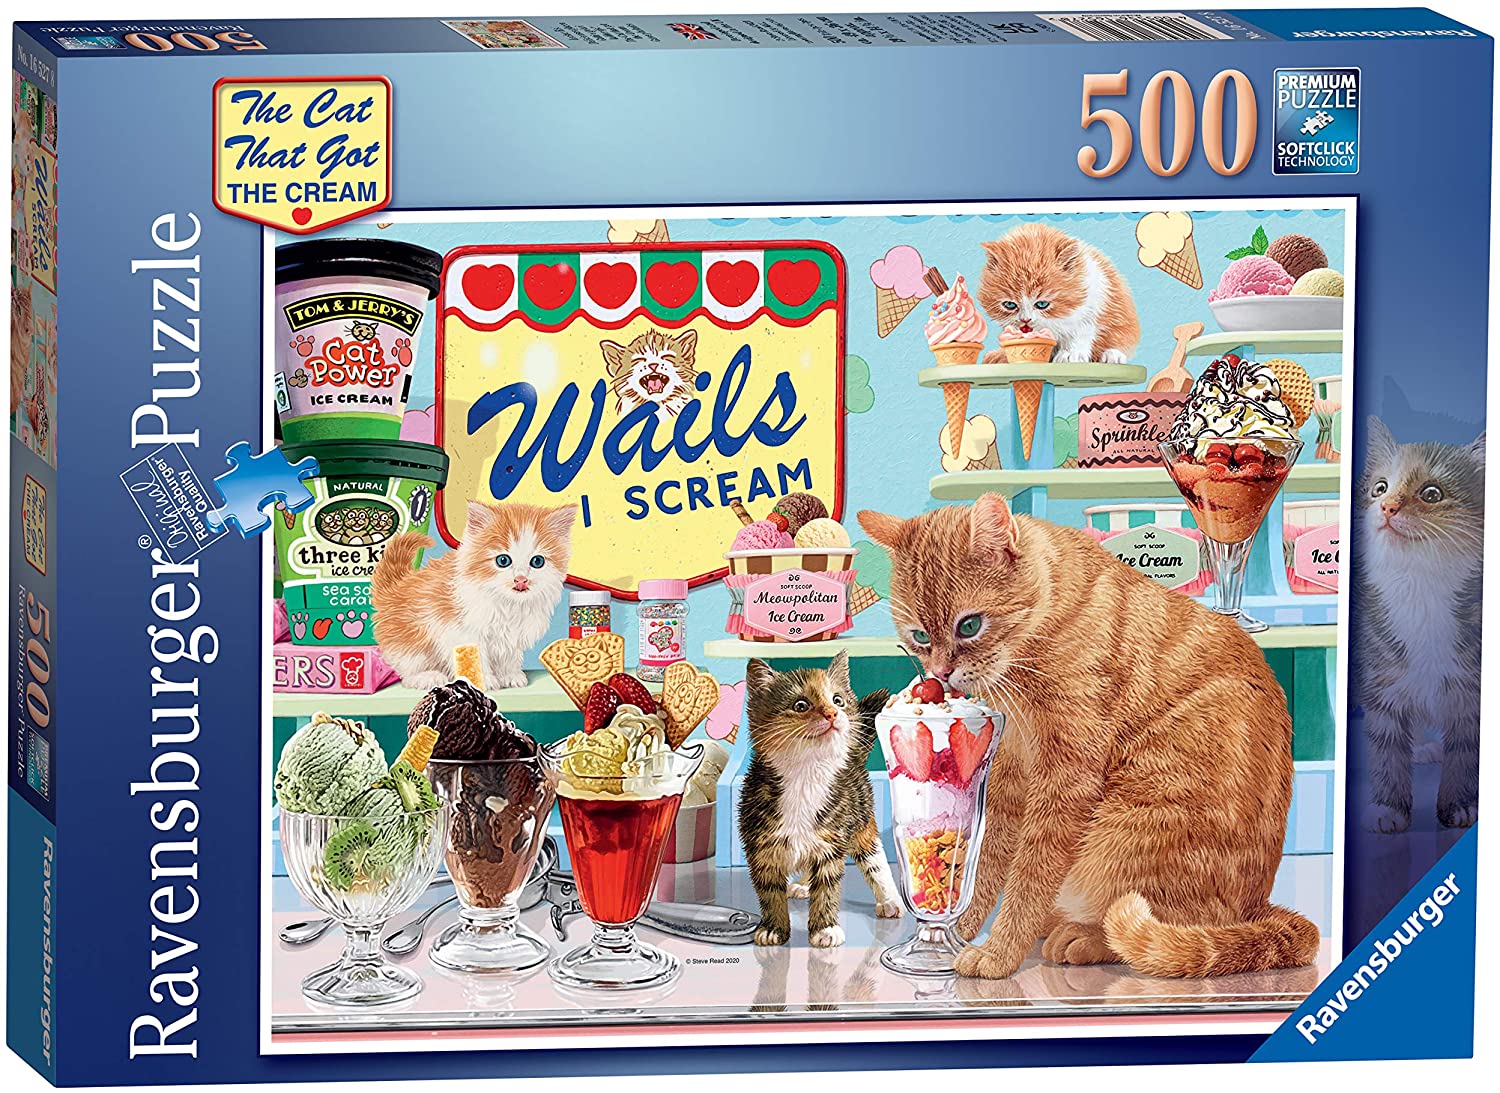 The Cat Who Go The Cream! 500 Piece Jigsaw